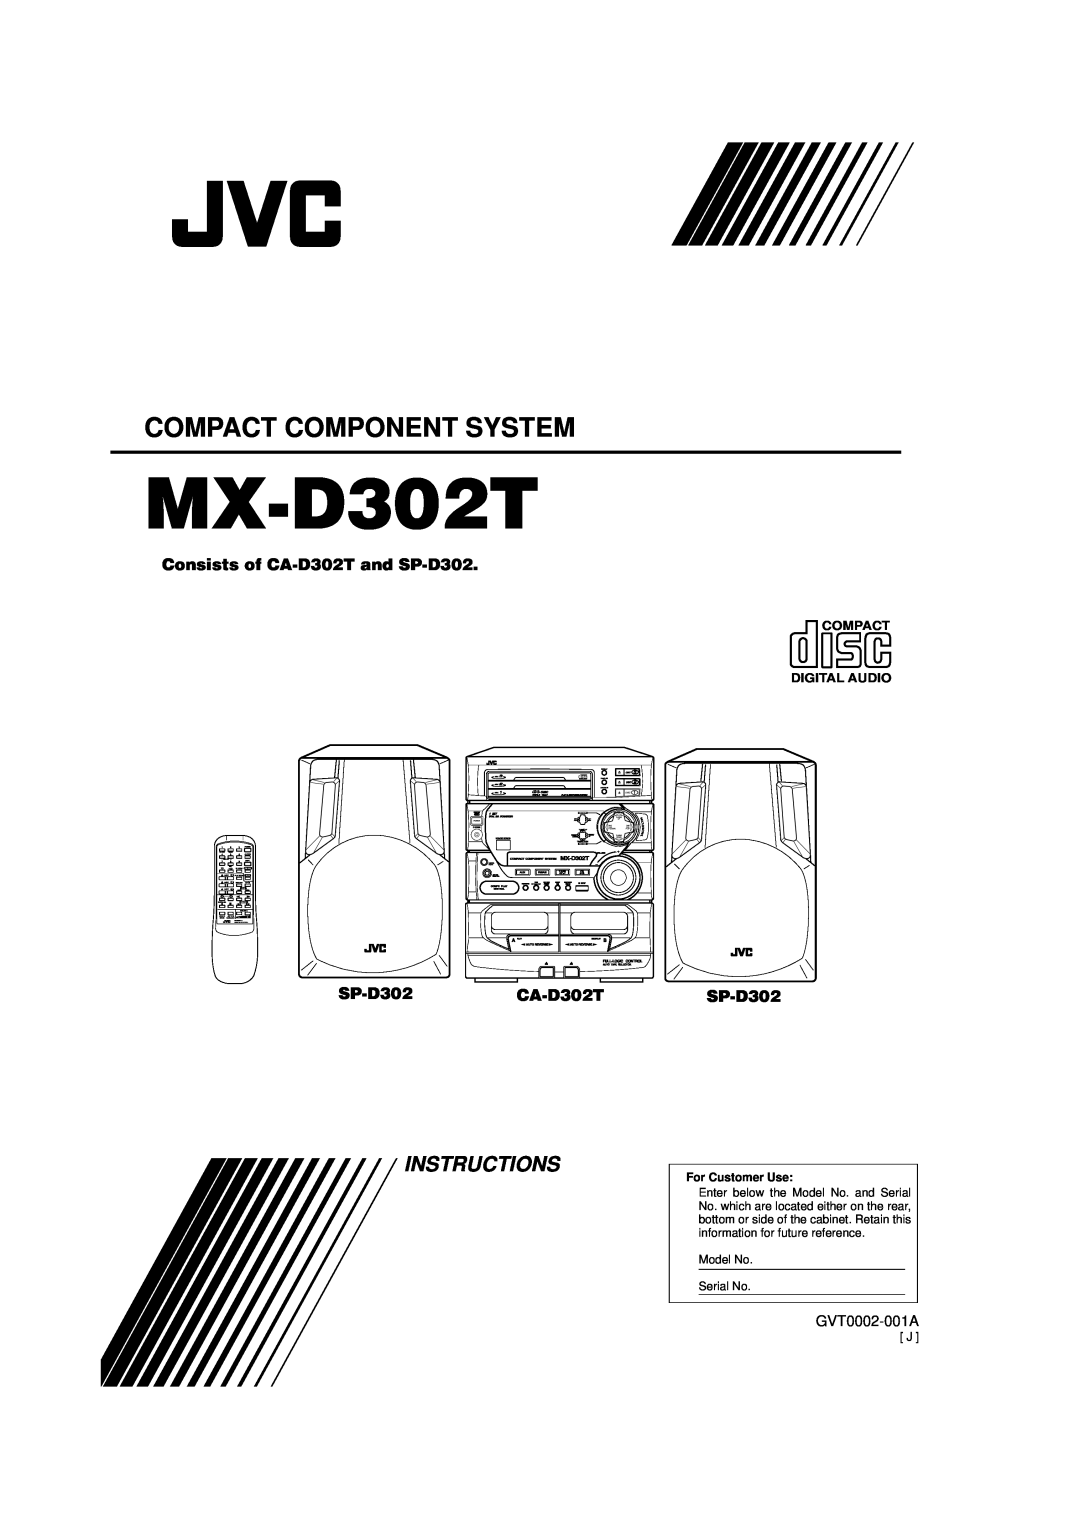 JVC manual Compact Component System, MX-D302T, Instructions, Consists of CA-D302Tand SP-D302, SP-D302CA-D302T, Sleep 